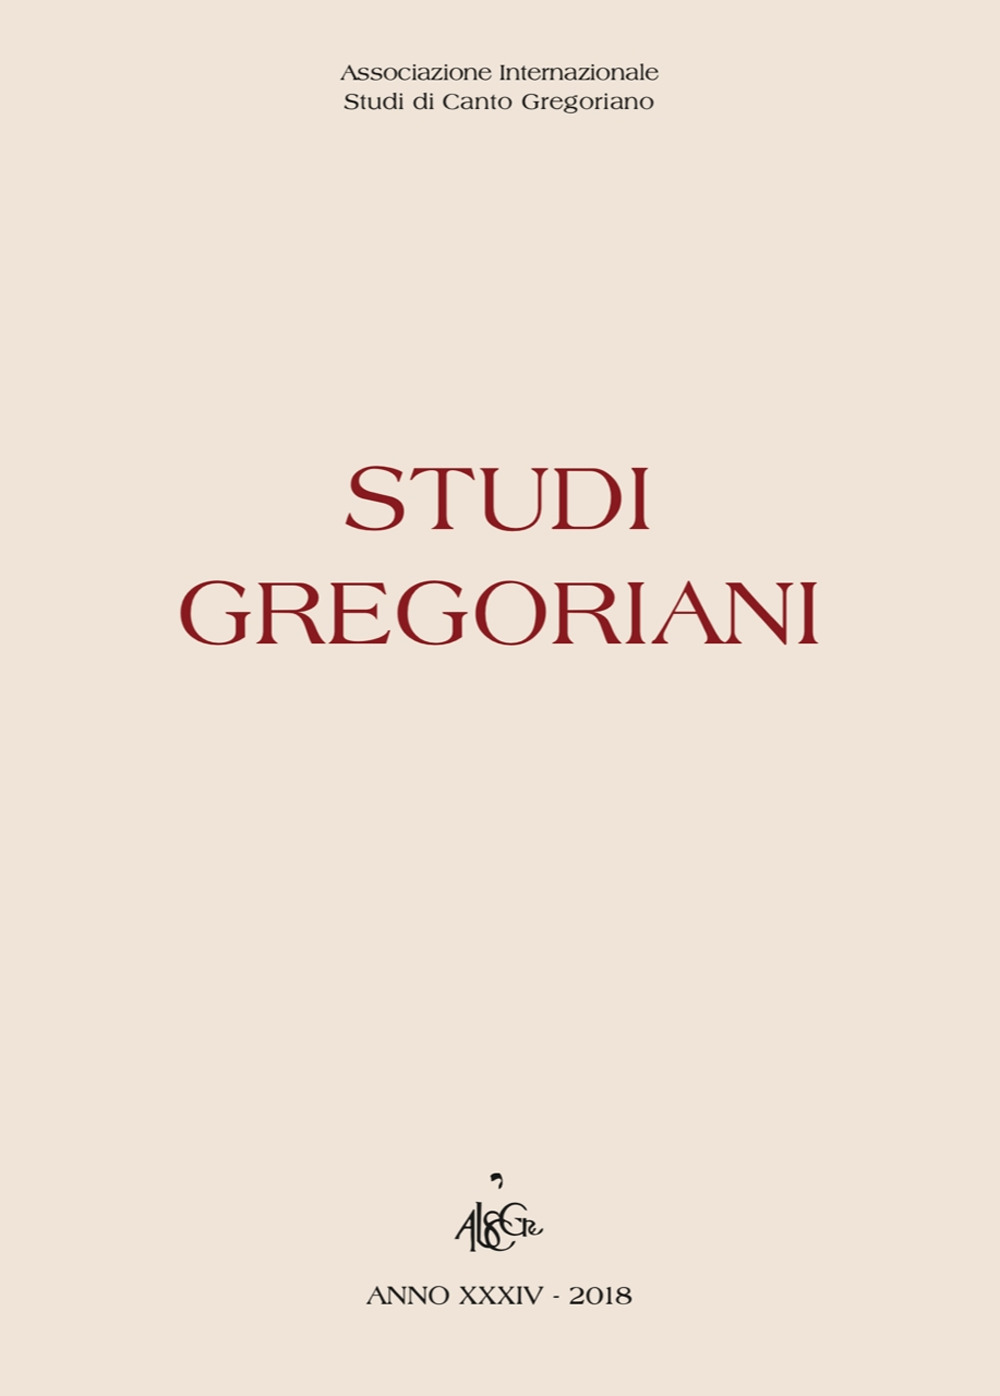 Studi gregoriani